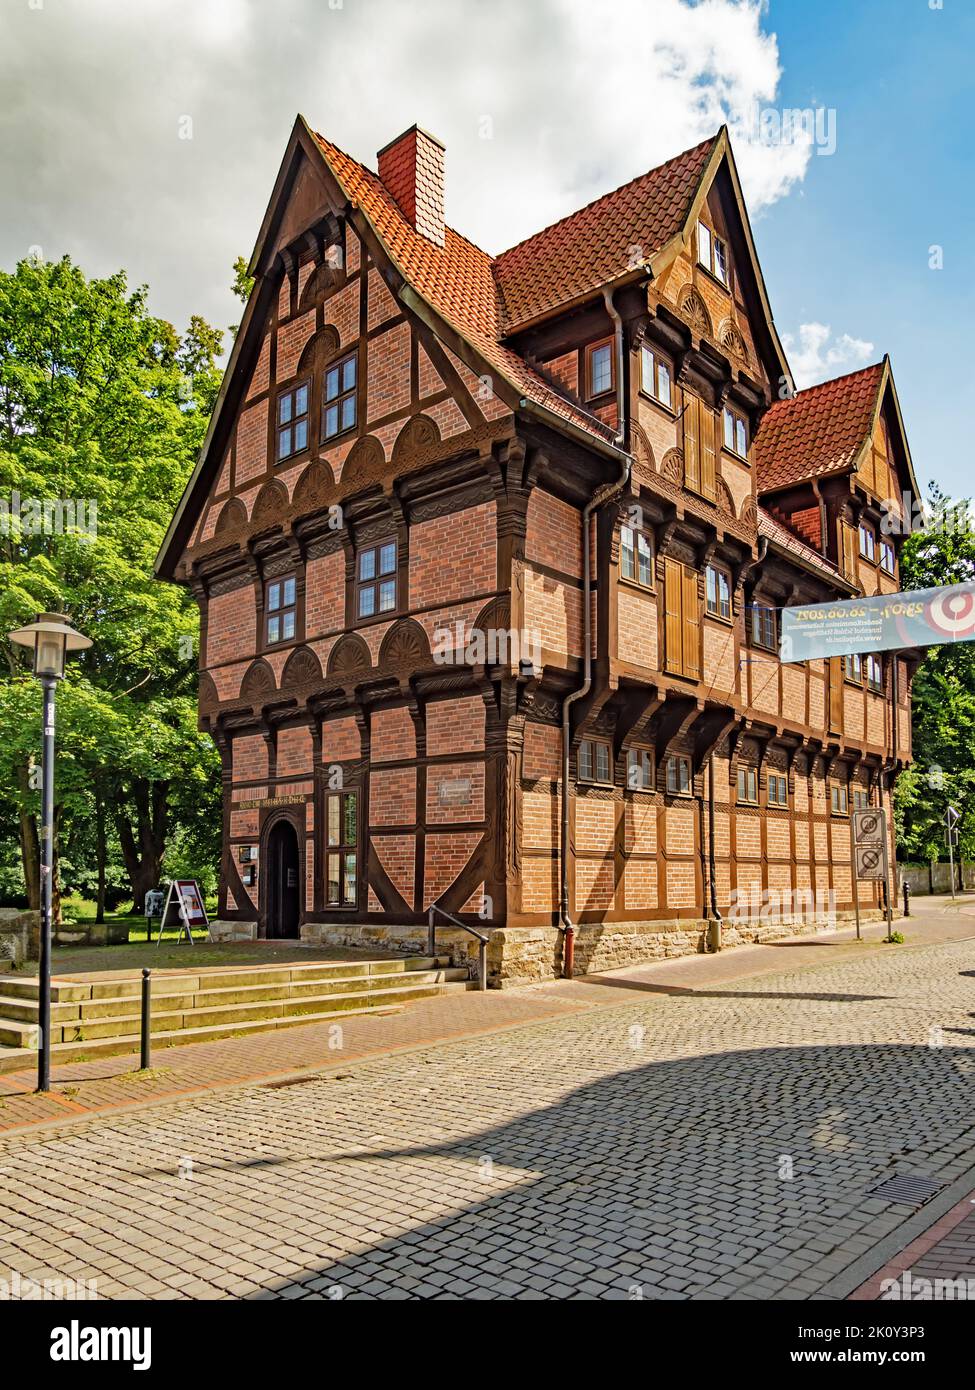 Stadthagen, Niedersachsen, Deutschland - 18. Juli 2021: Außenansicht des Museums Amtspforte in Stadthagen Stockfoto